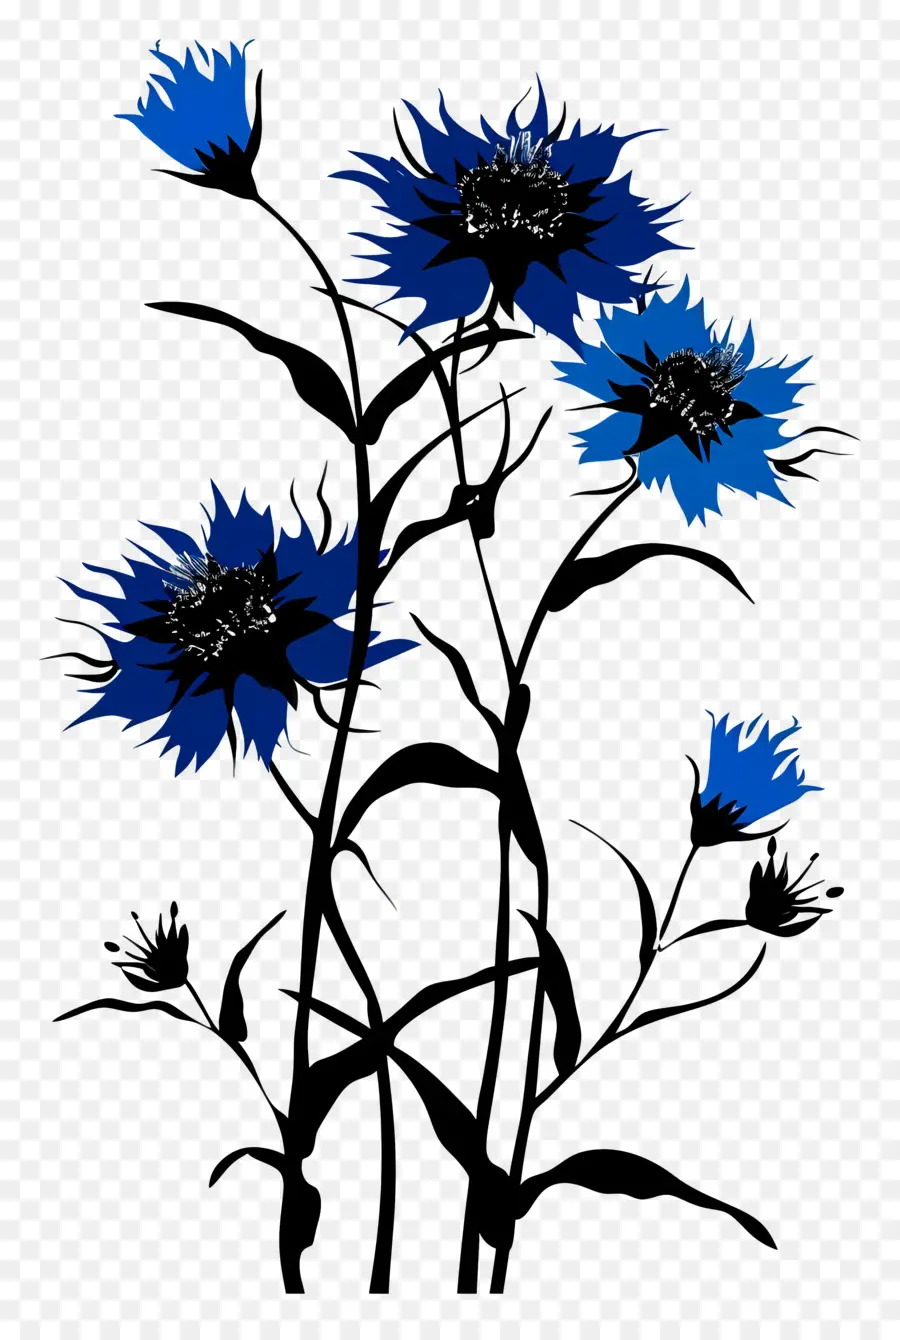 hoa hình bóng hoa màu xanh cánh hoa nổi màu xanh đậm - Cánh hoa màu xanh nổi trong không khí